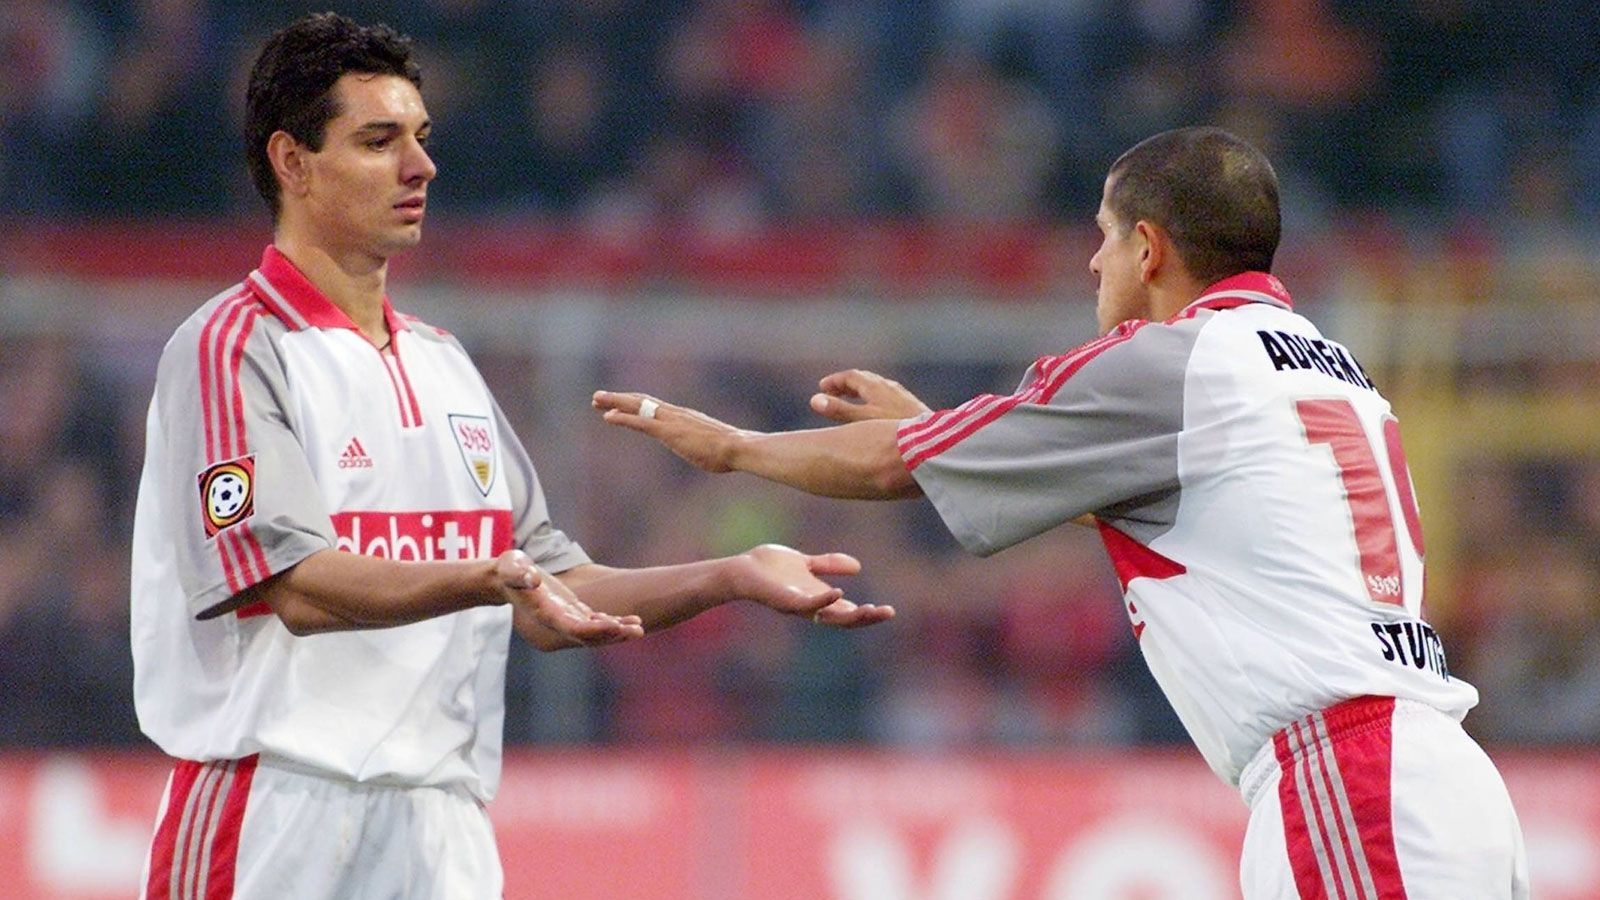 
                <strong>Ioan Viorel Ganea und Adhemar (VfB Stuttgart)</strong><br>
                Dreierpacker: Adhemar - Vorlagengeber: Ioan Viorel Ganea - Ergebnis: 6:1 gegen Kaiserslautern - Datum: 03. Februar 2001
              